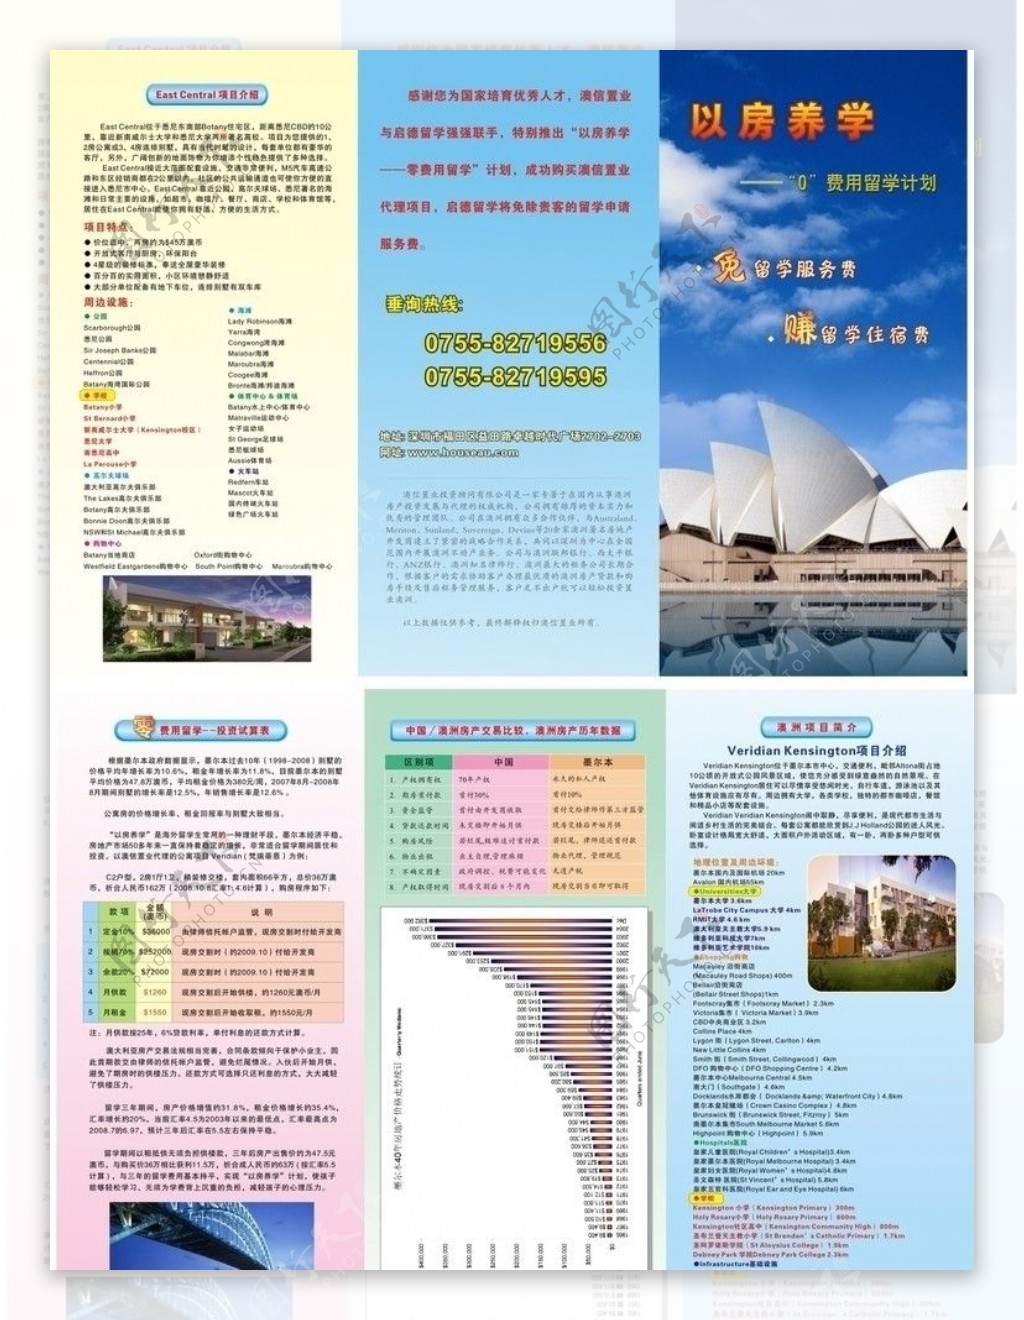 澳洲留学三折页图片